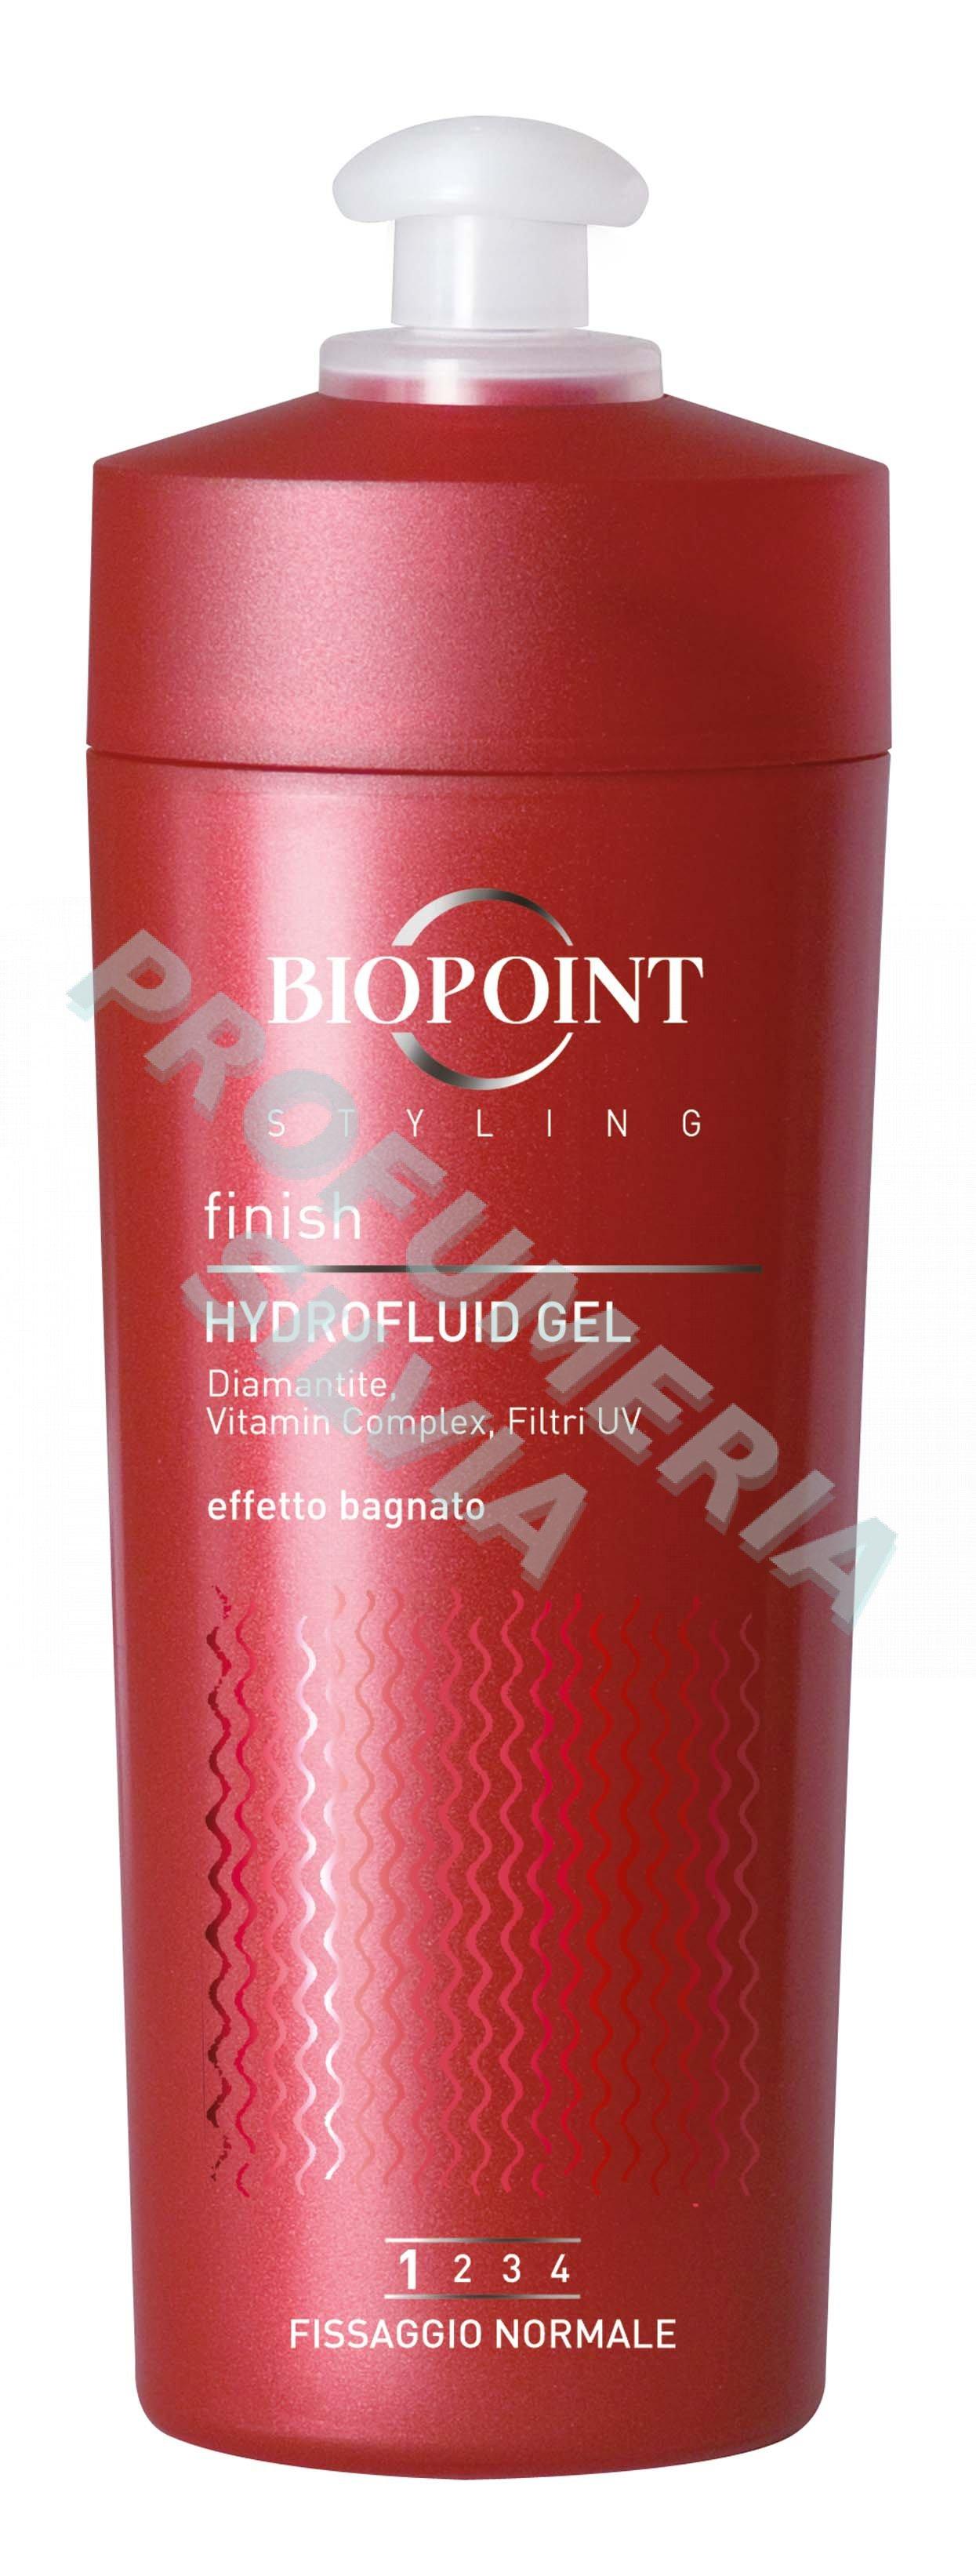 Foto hydrofluid gel 200ml Biopoint